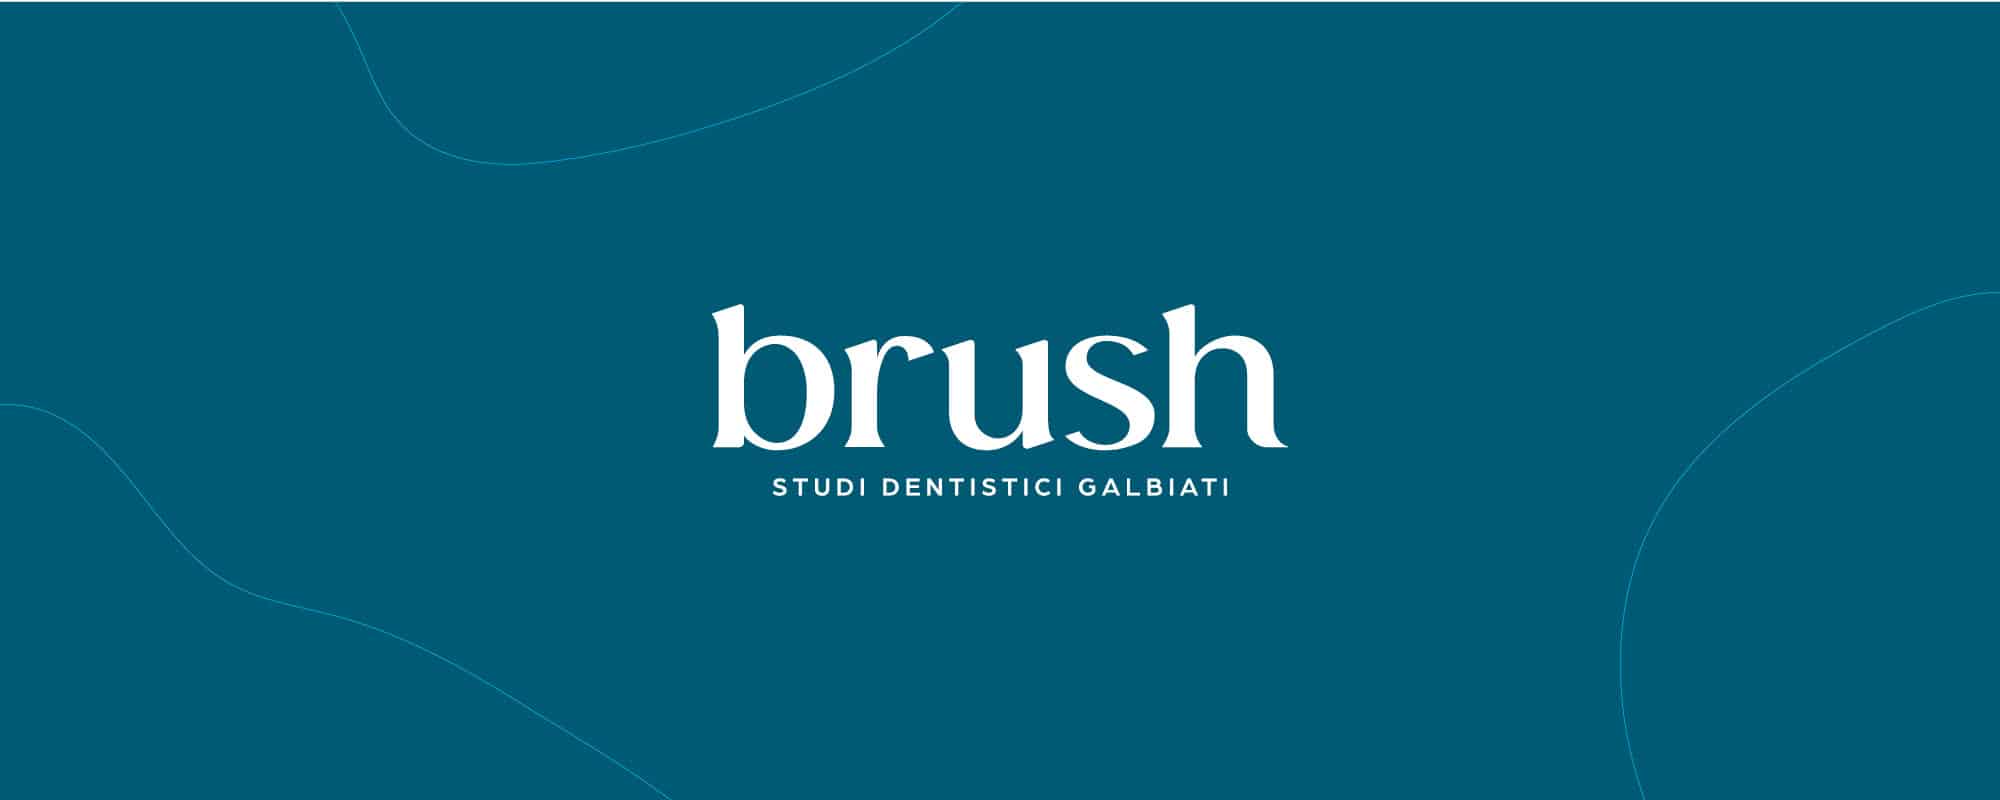 Da gennaio 2022 Bluesmile diventa “Brush”: la prevenzione al centro di una nuova concezione di studio dentistico